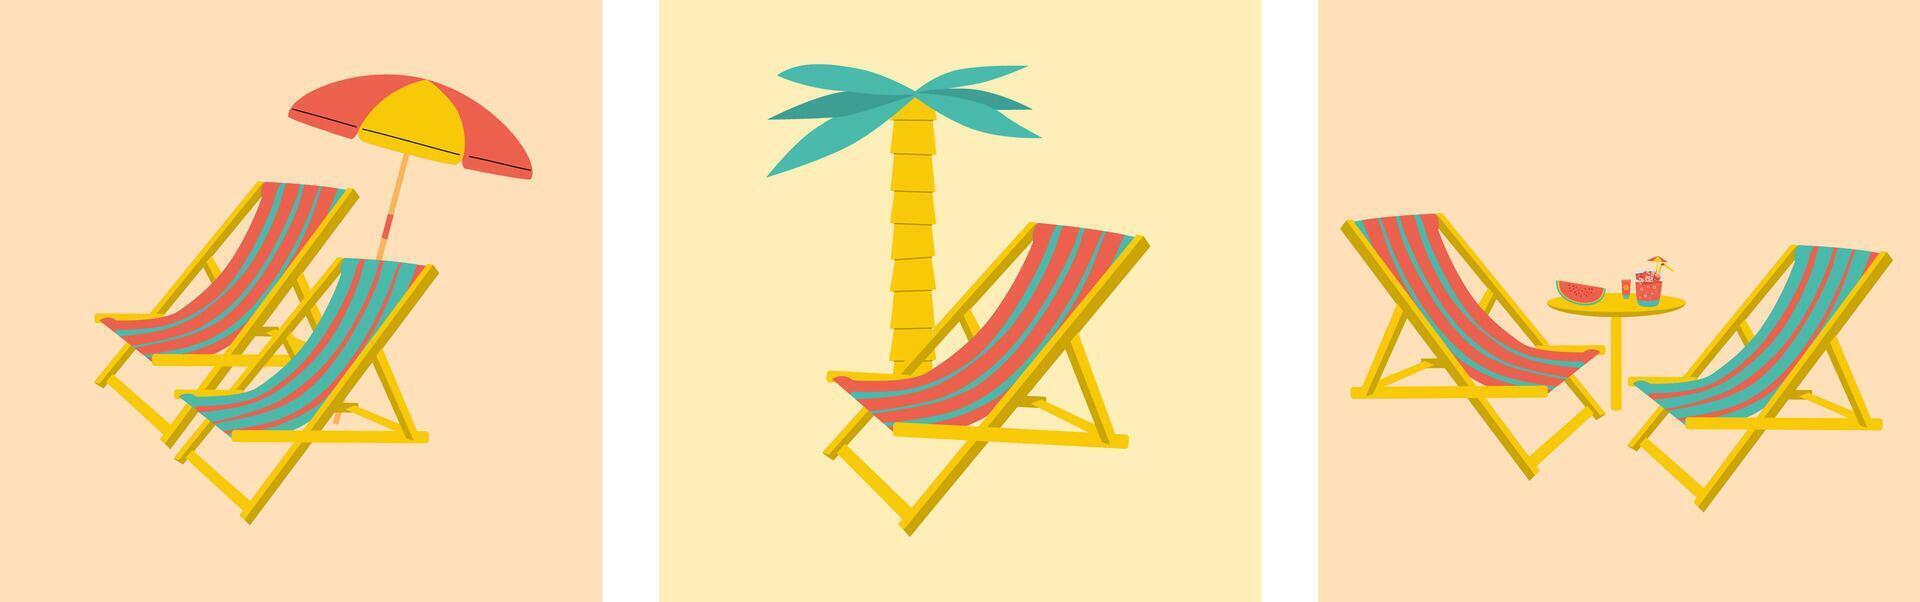 ligstoel en paraplu Aan de strand. illustratie vector